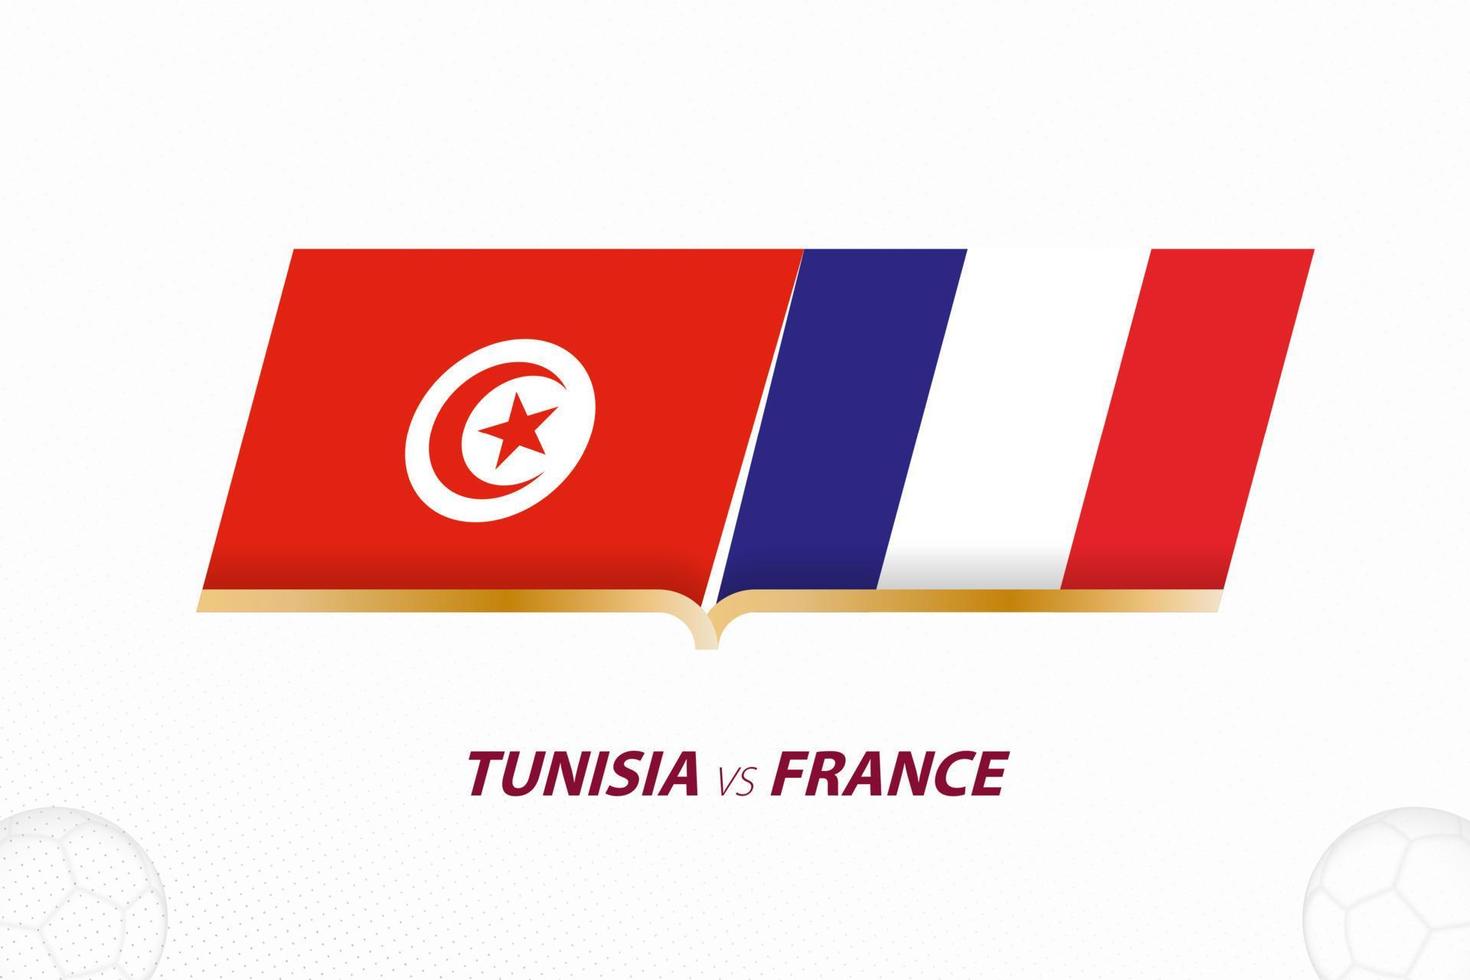 tunísia vs frança na competição de futebol, grupo a. contra o ícone no fundo do futebol. vetor